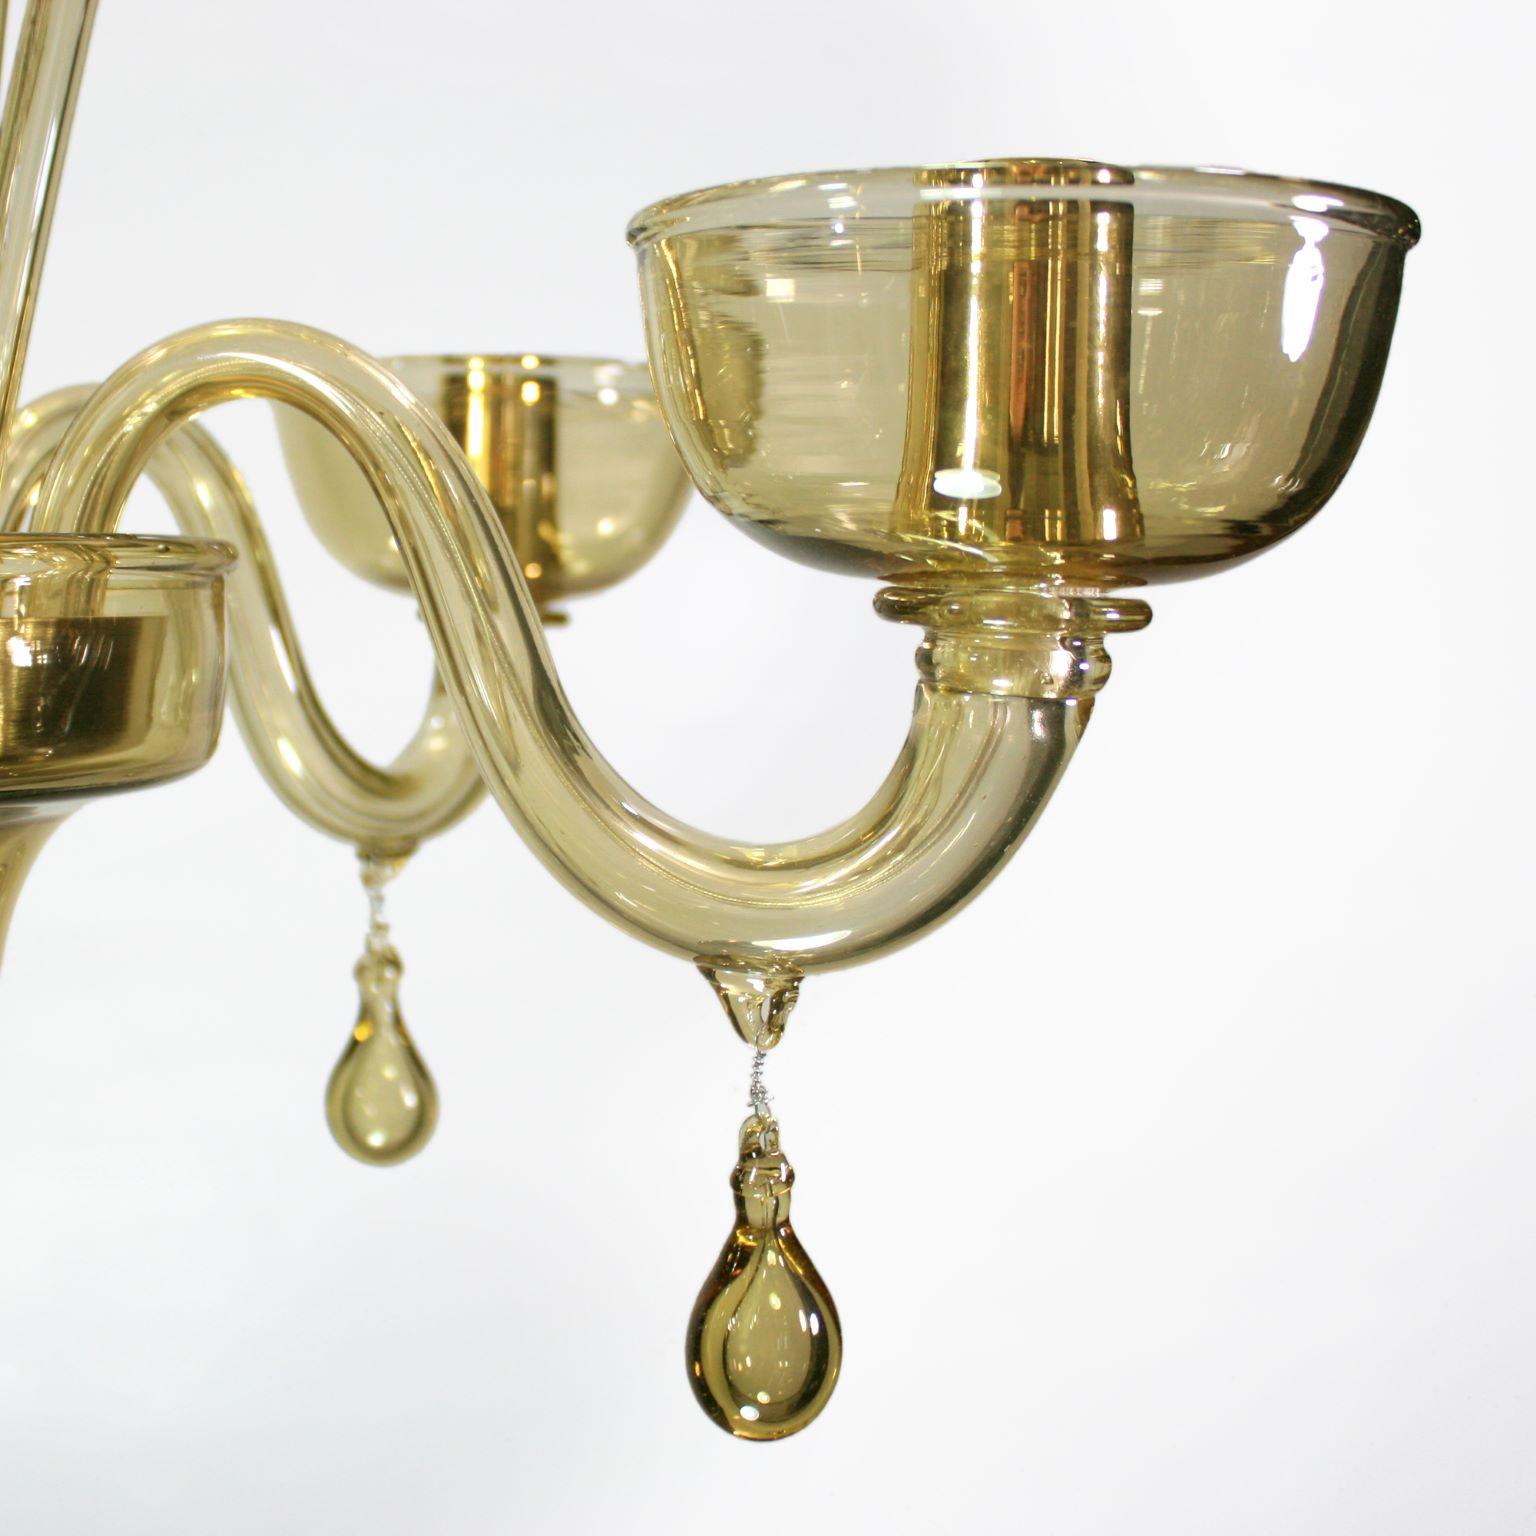 Ce lustre en verre vénitien est en verre de Murano lisse comme de la paille et comporte des pastorales et des pendentifs. Les bras ont des coupes en verre vers le haut.
Il se caractérise par une forme romantique et délicate. La tige est caractérisée